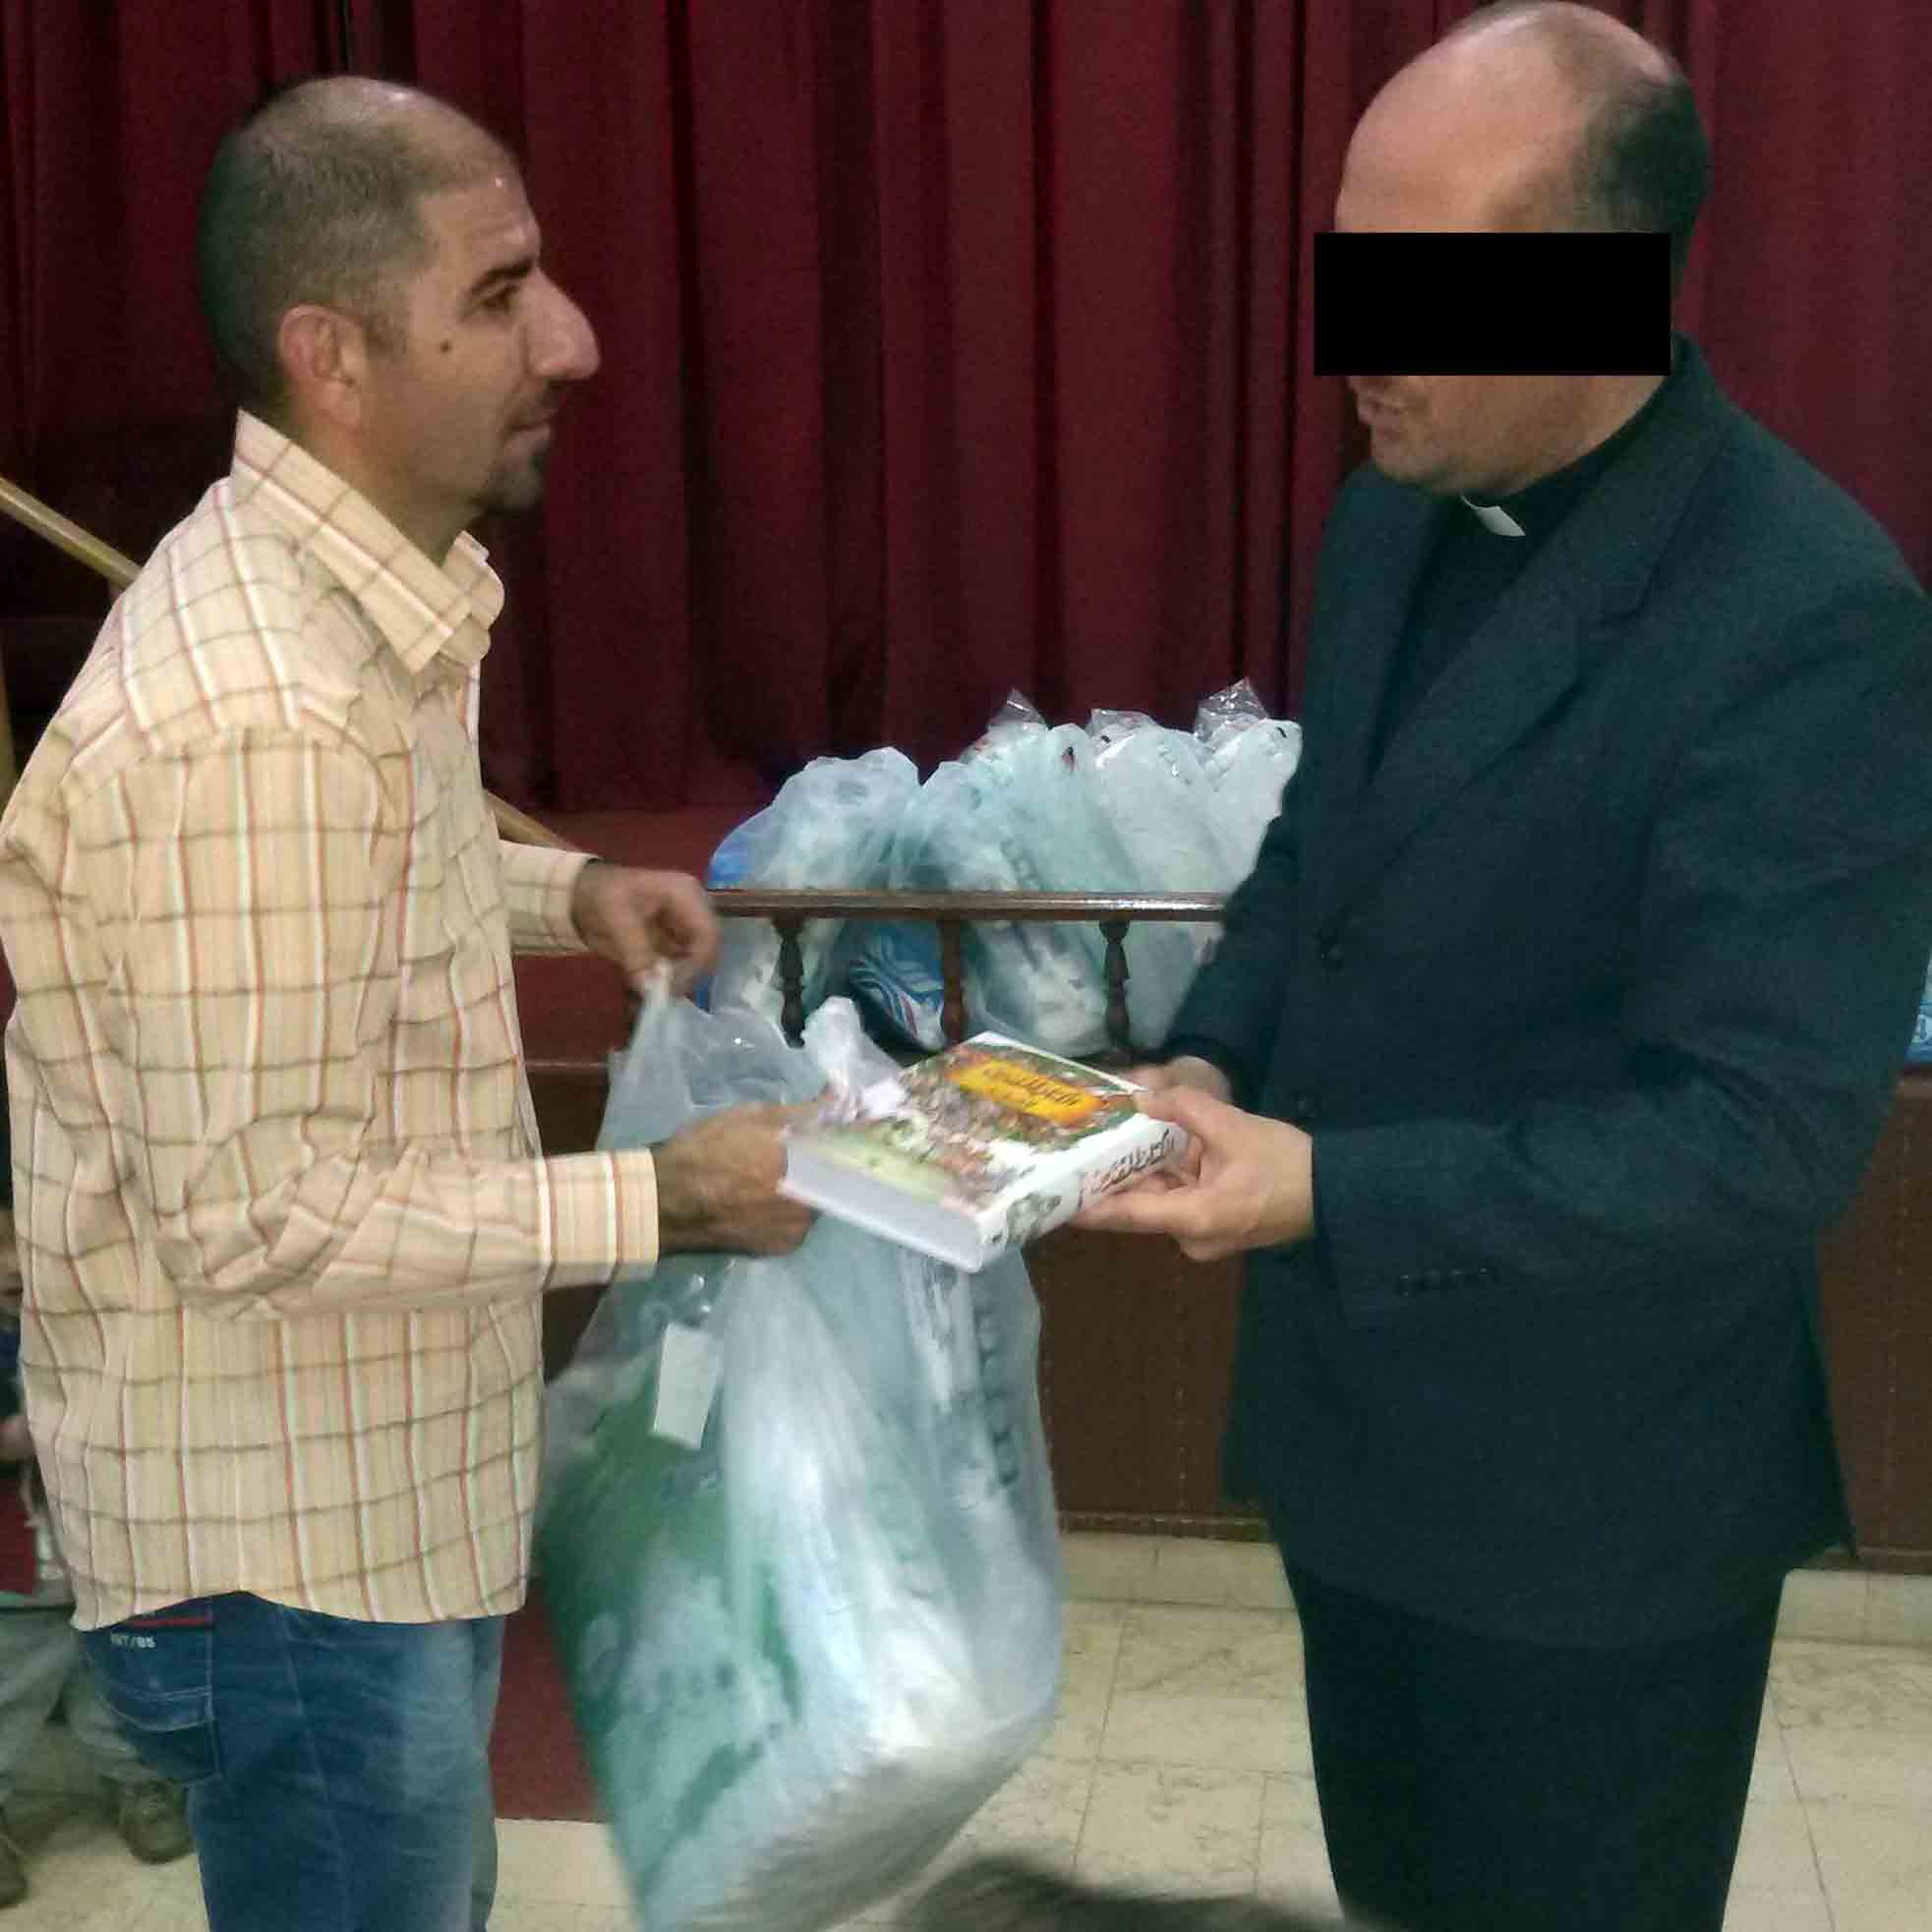 SYRIA | NOV. 13, 2020 — Pray for Pastor Zaki in Damascus